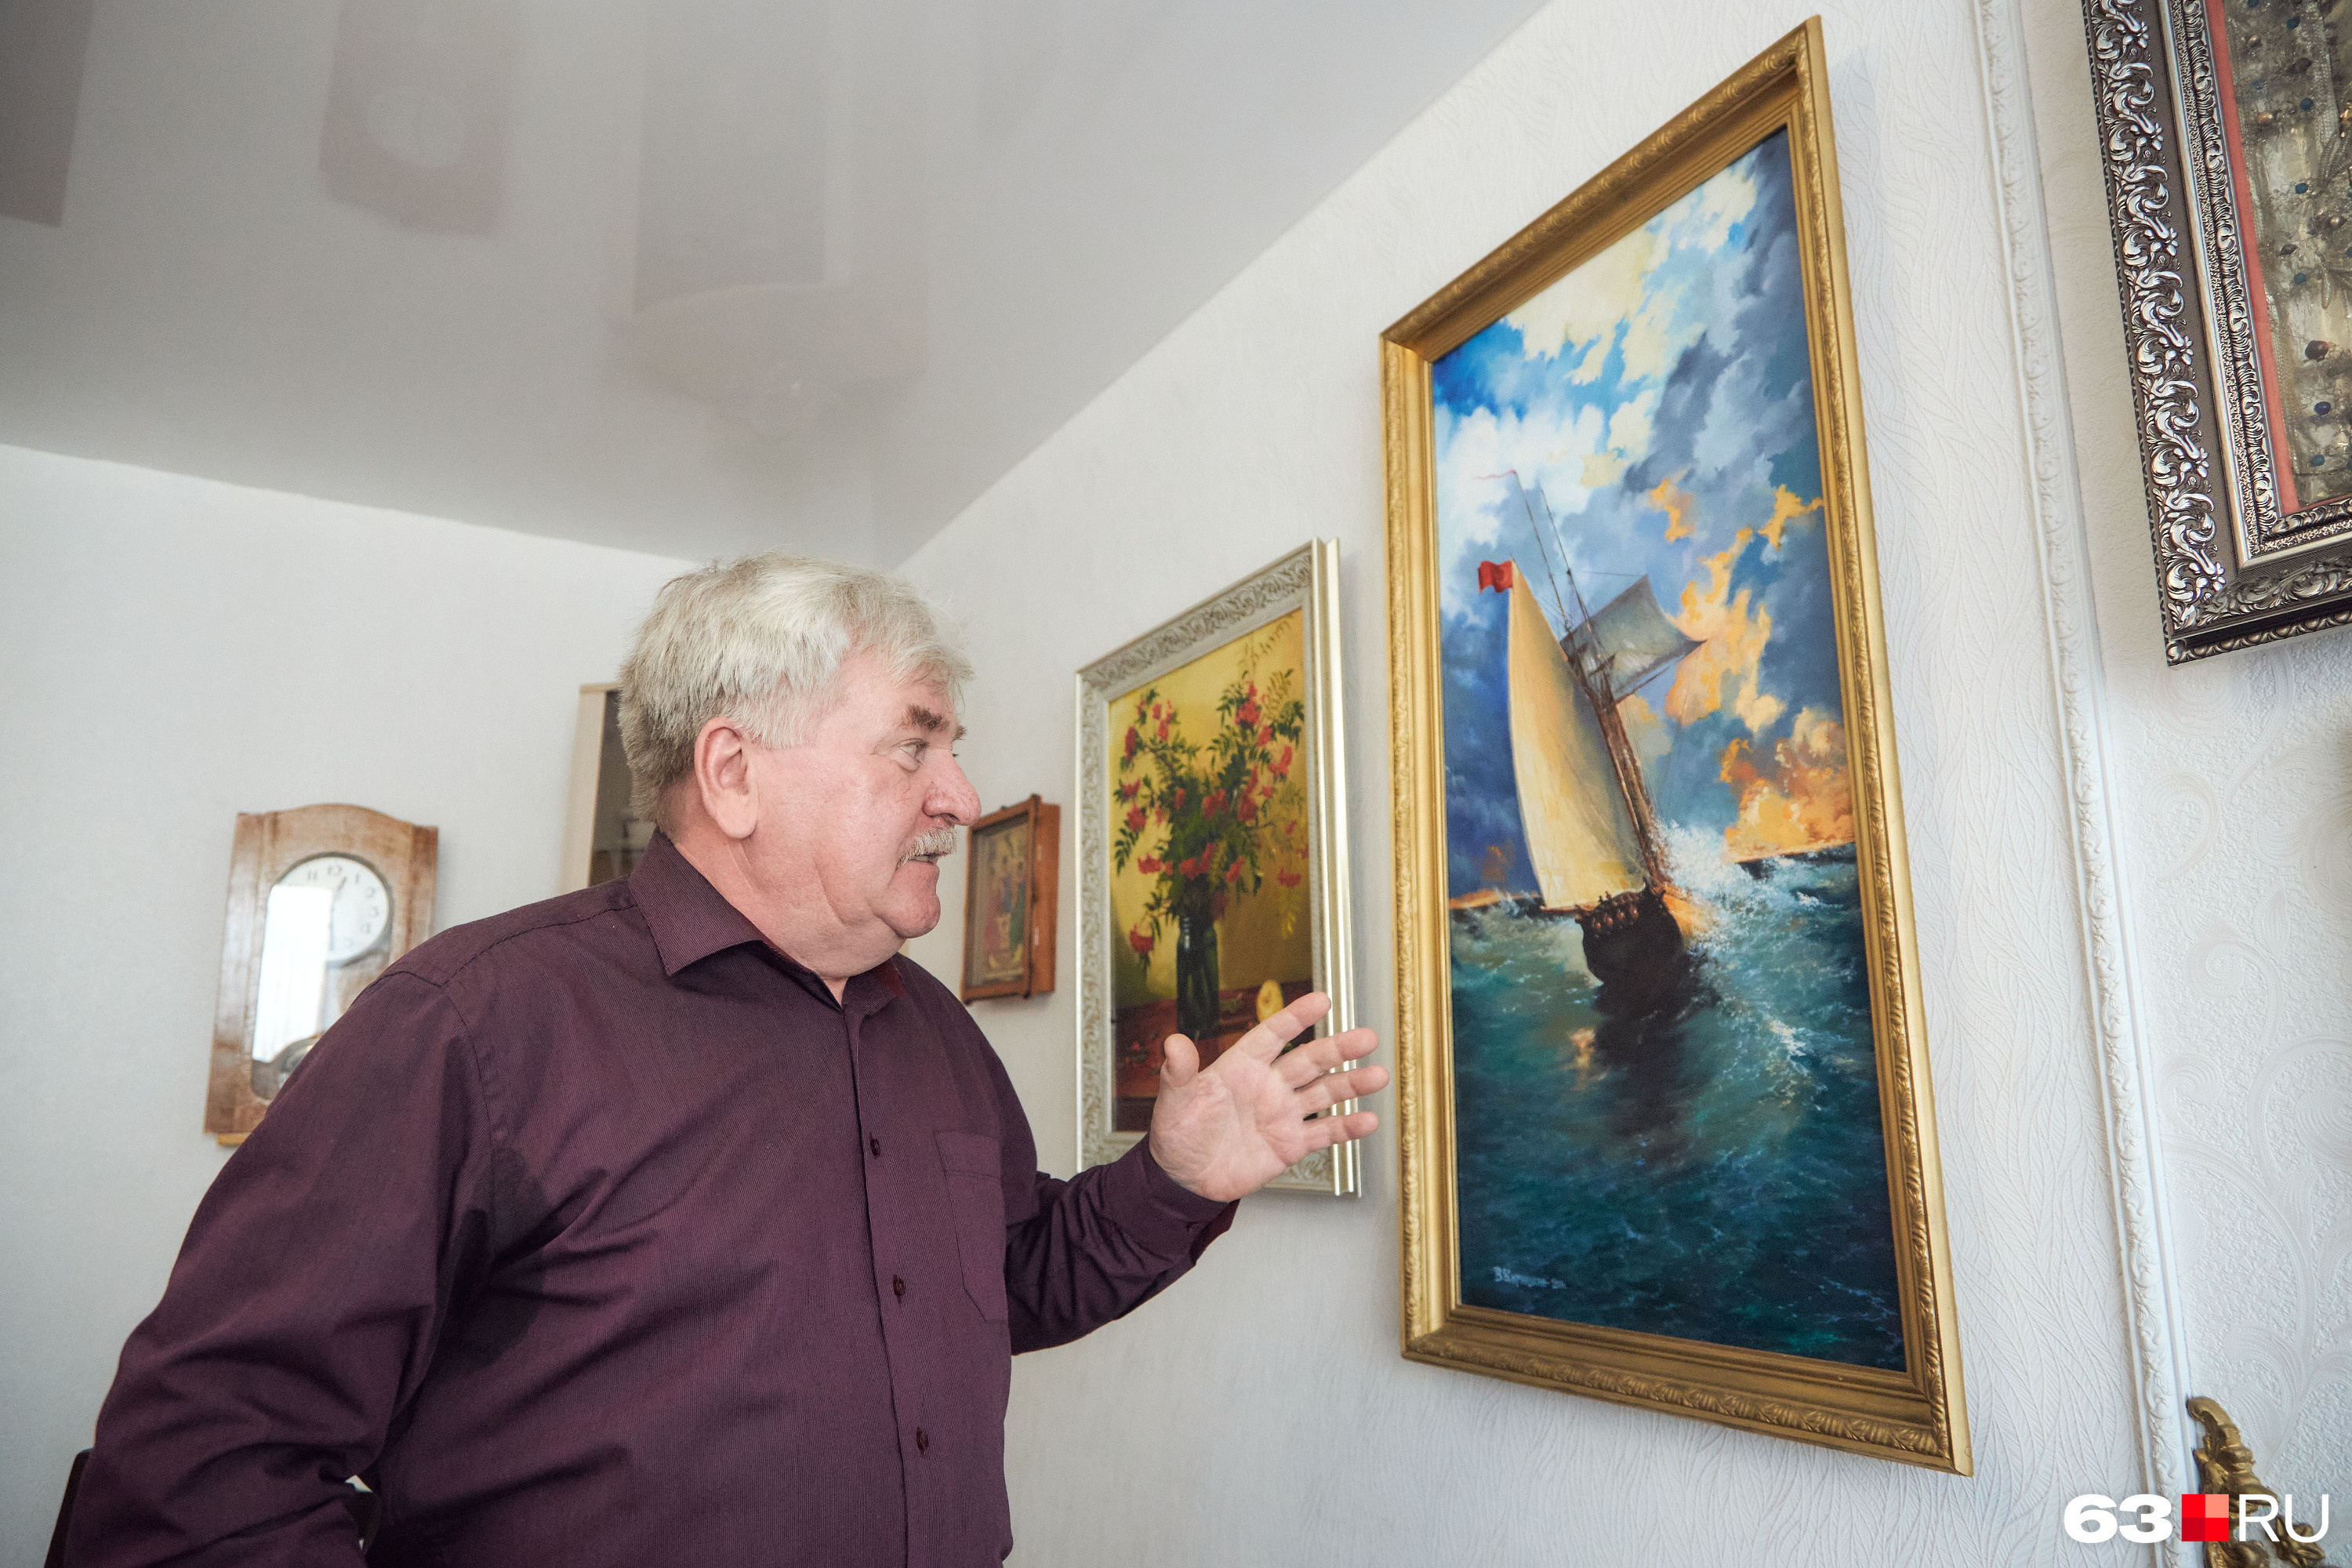 Дома у Владимира Кирюшкина повсюду висят полотна его собственного творения